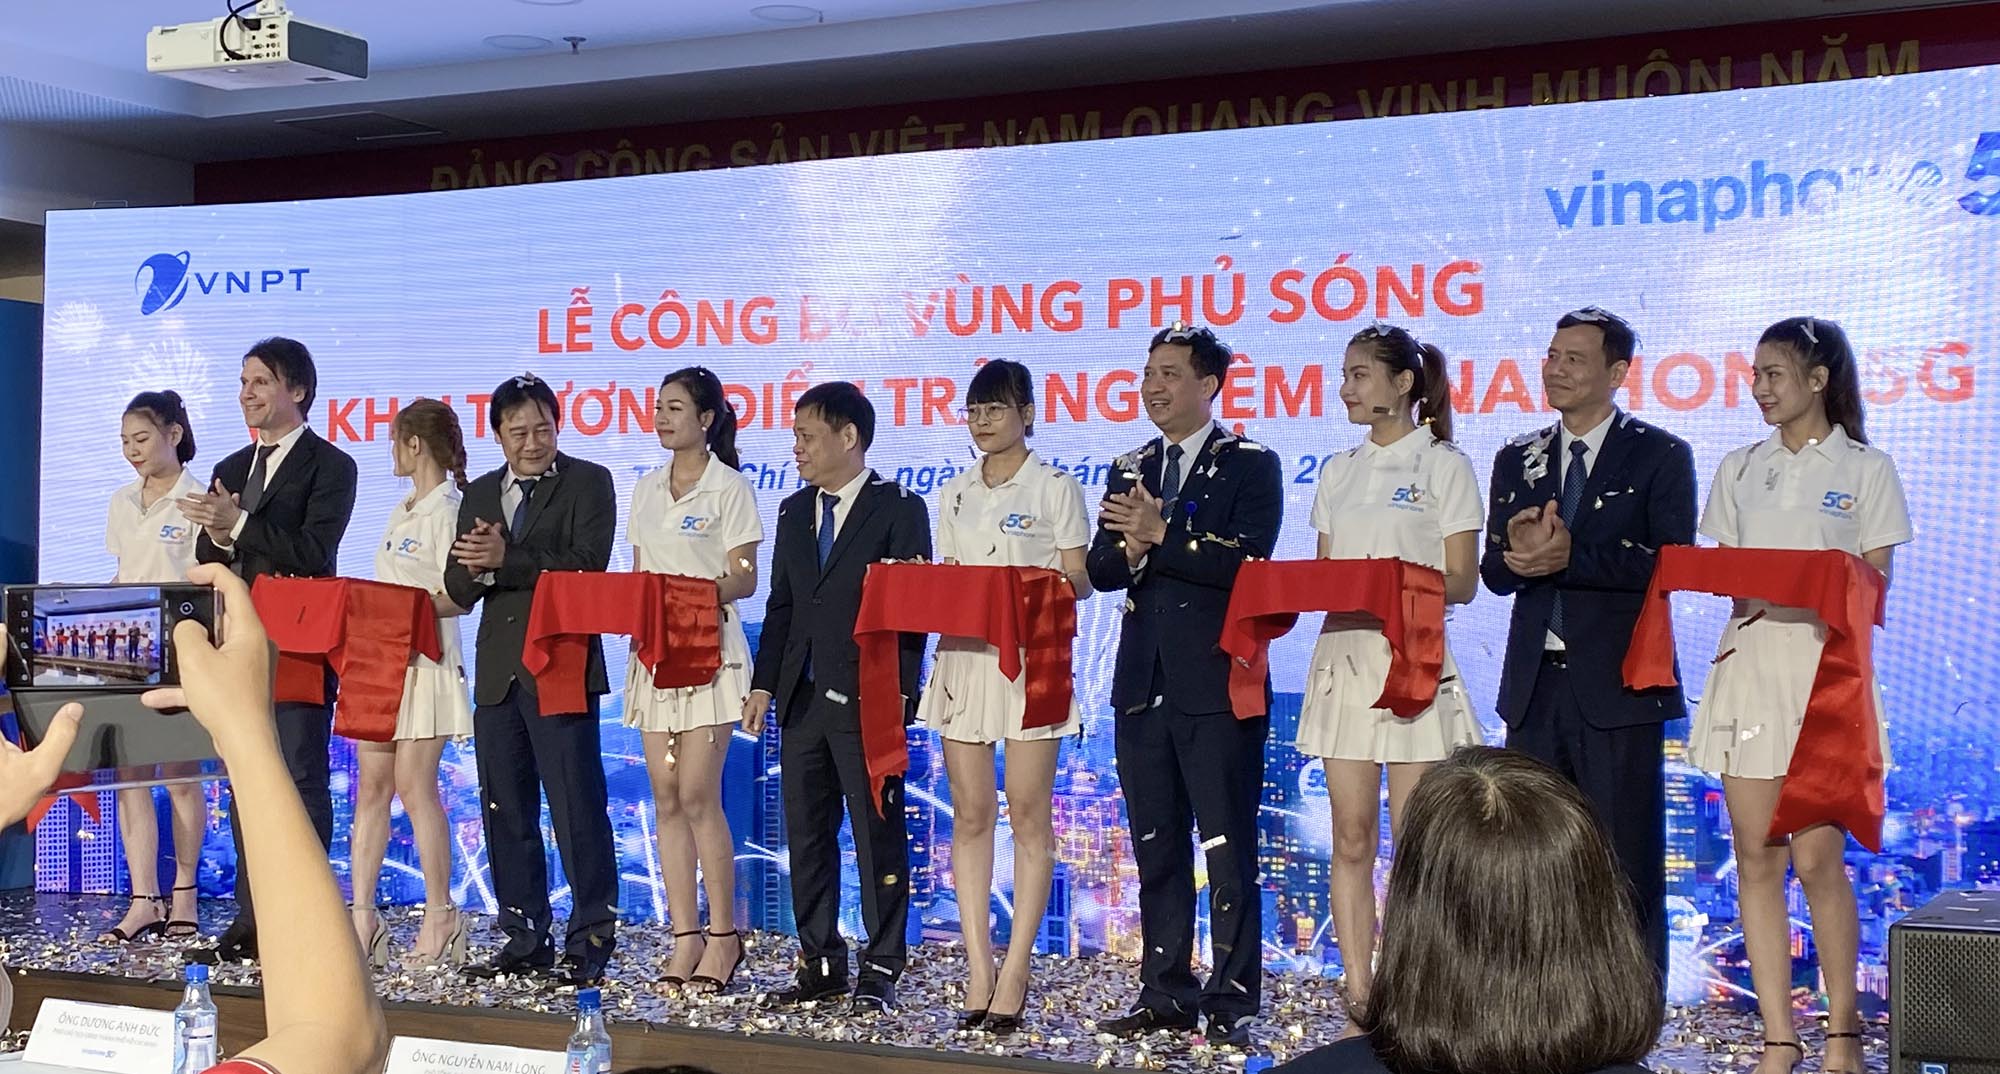 VNPT chính thức công bố vùng phủ sóng VinaPhone 5G tại Hà Nội và TP. Hồ Chí Minh